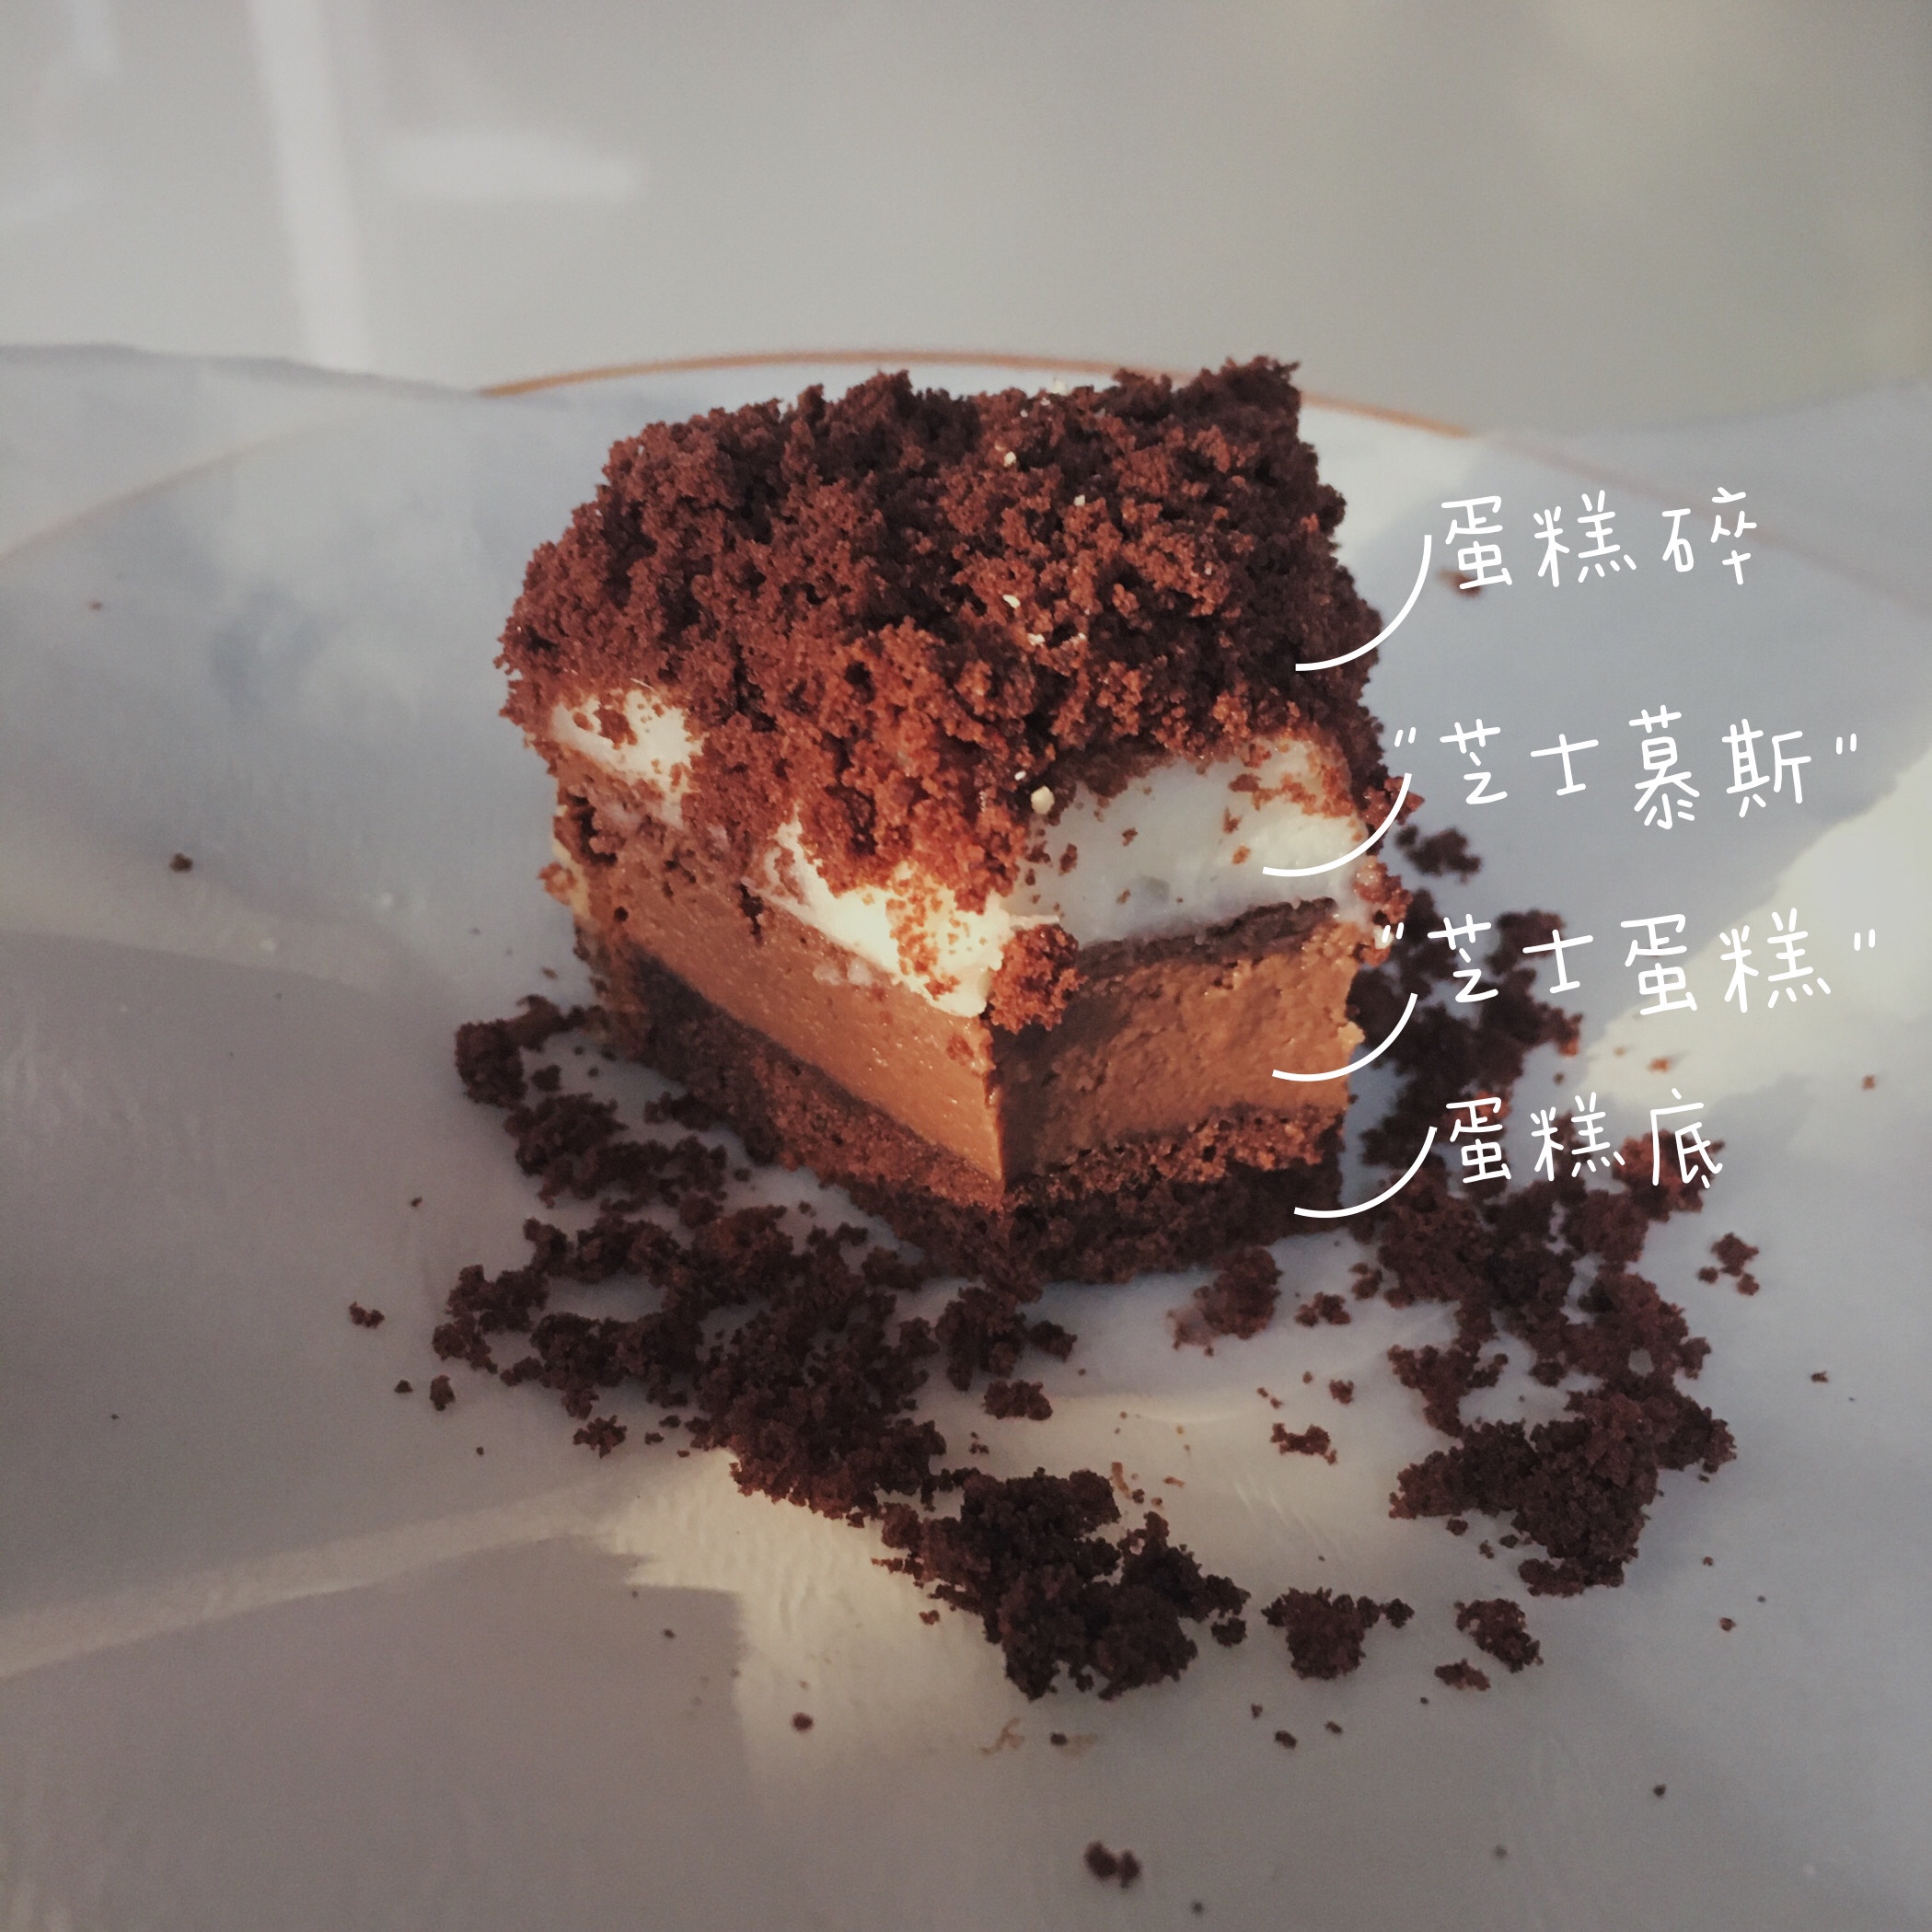 健康低脂、伪·北海道巧克力双层芝士蛋糕（六寸）的做法